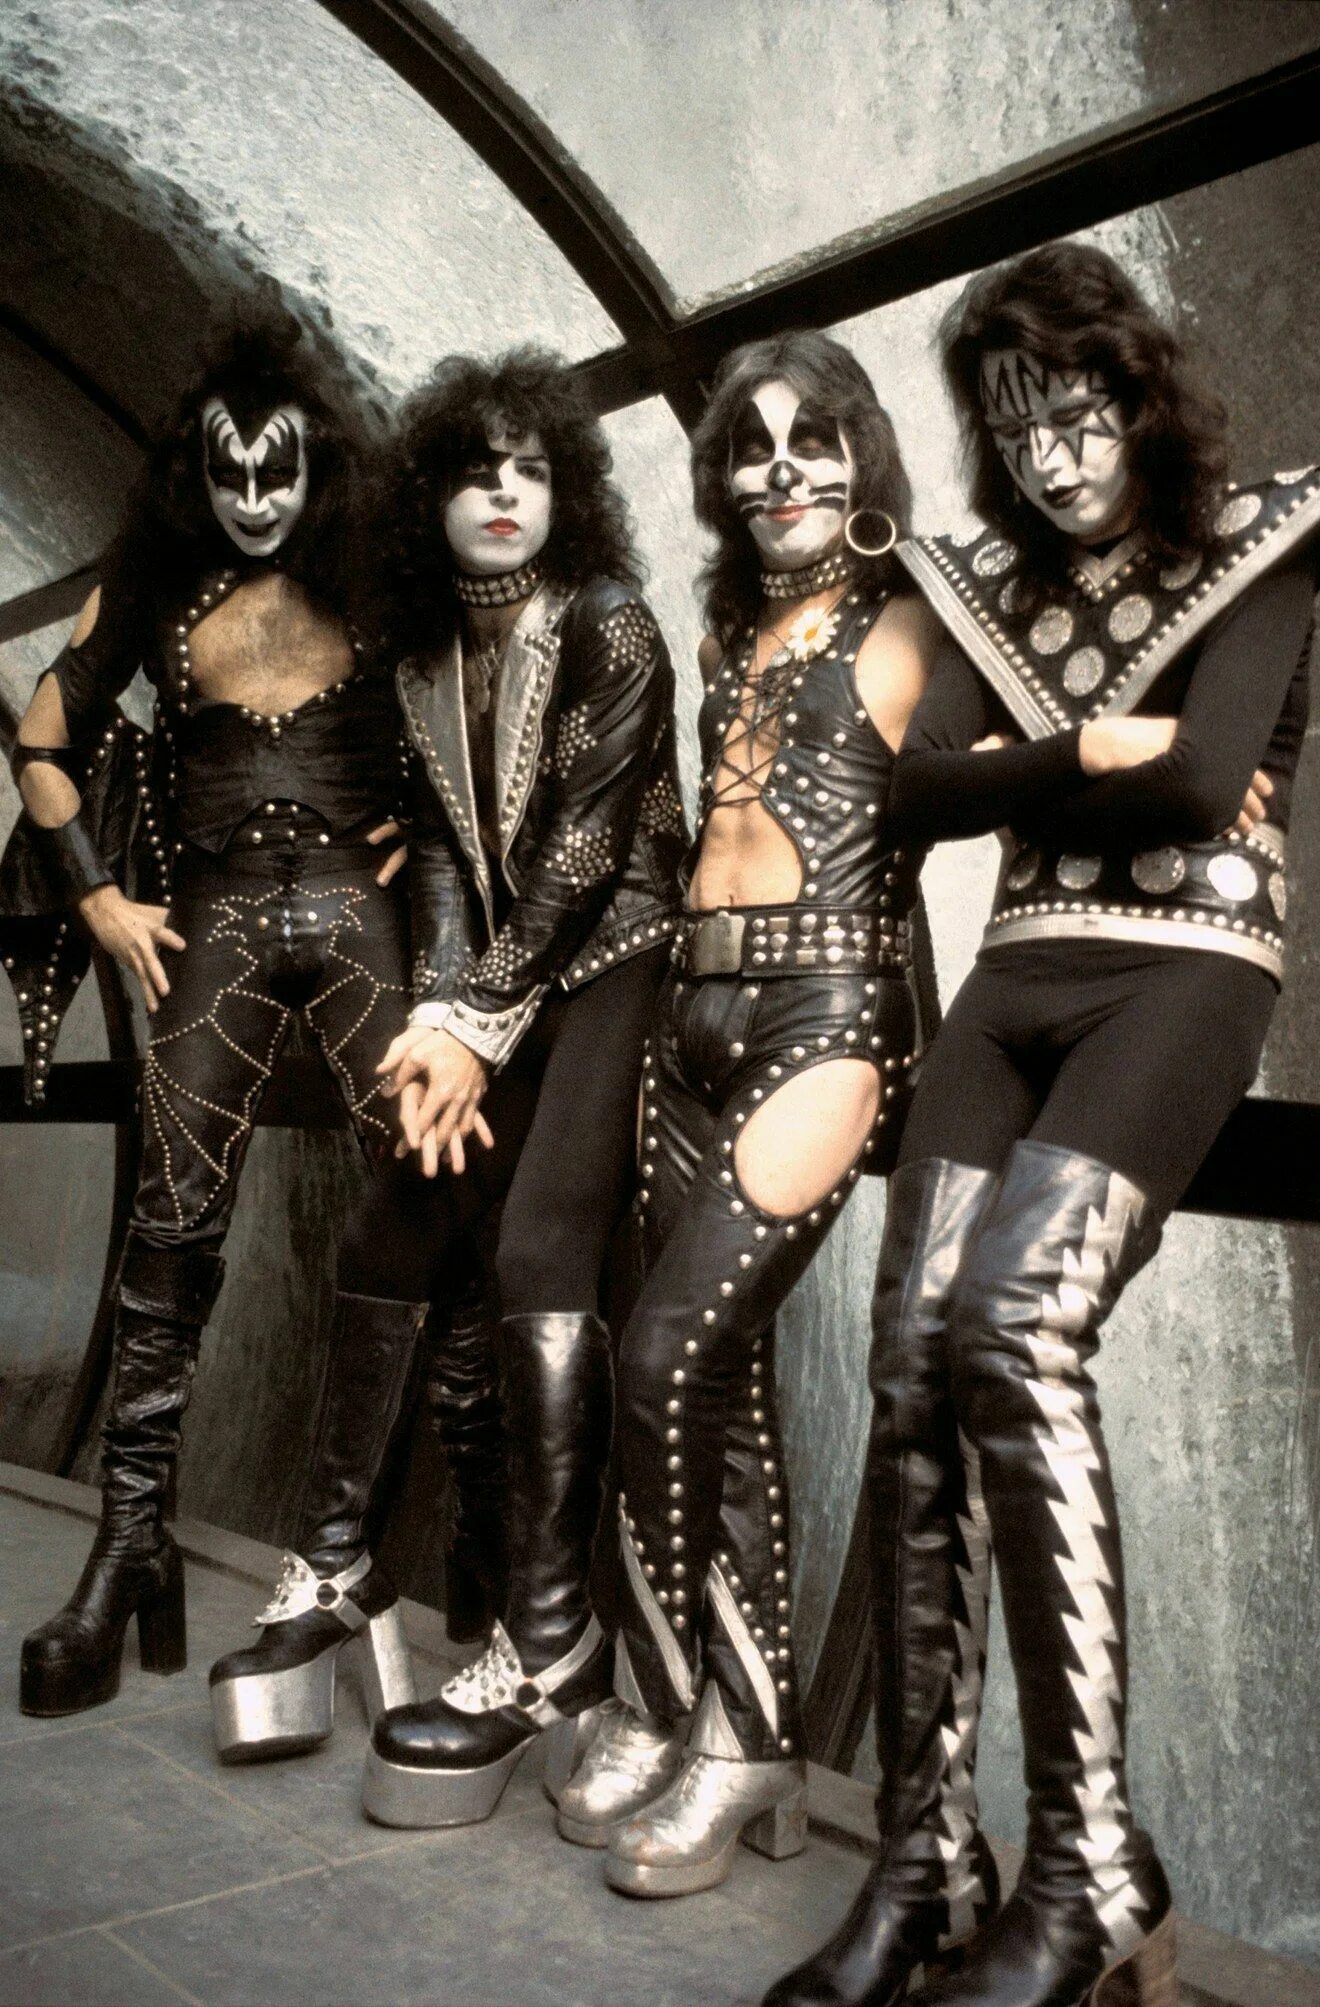 Группа Kiss. Группа Kiss 1973. Элис Купер группа Кисс. Группа Кисс в молодости.